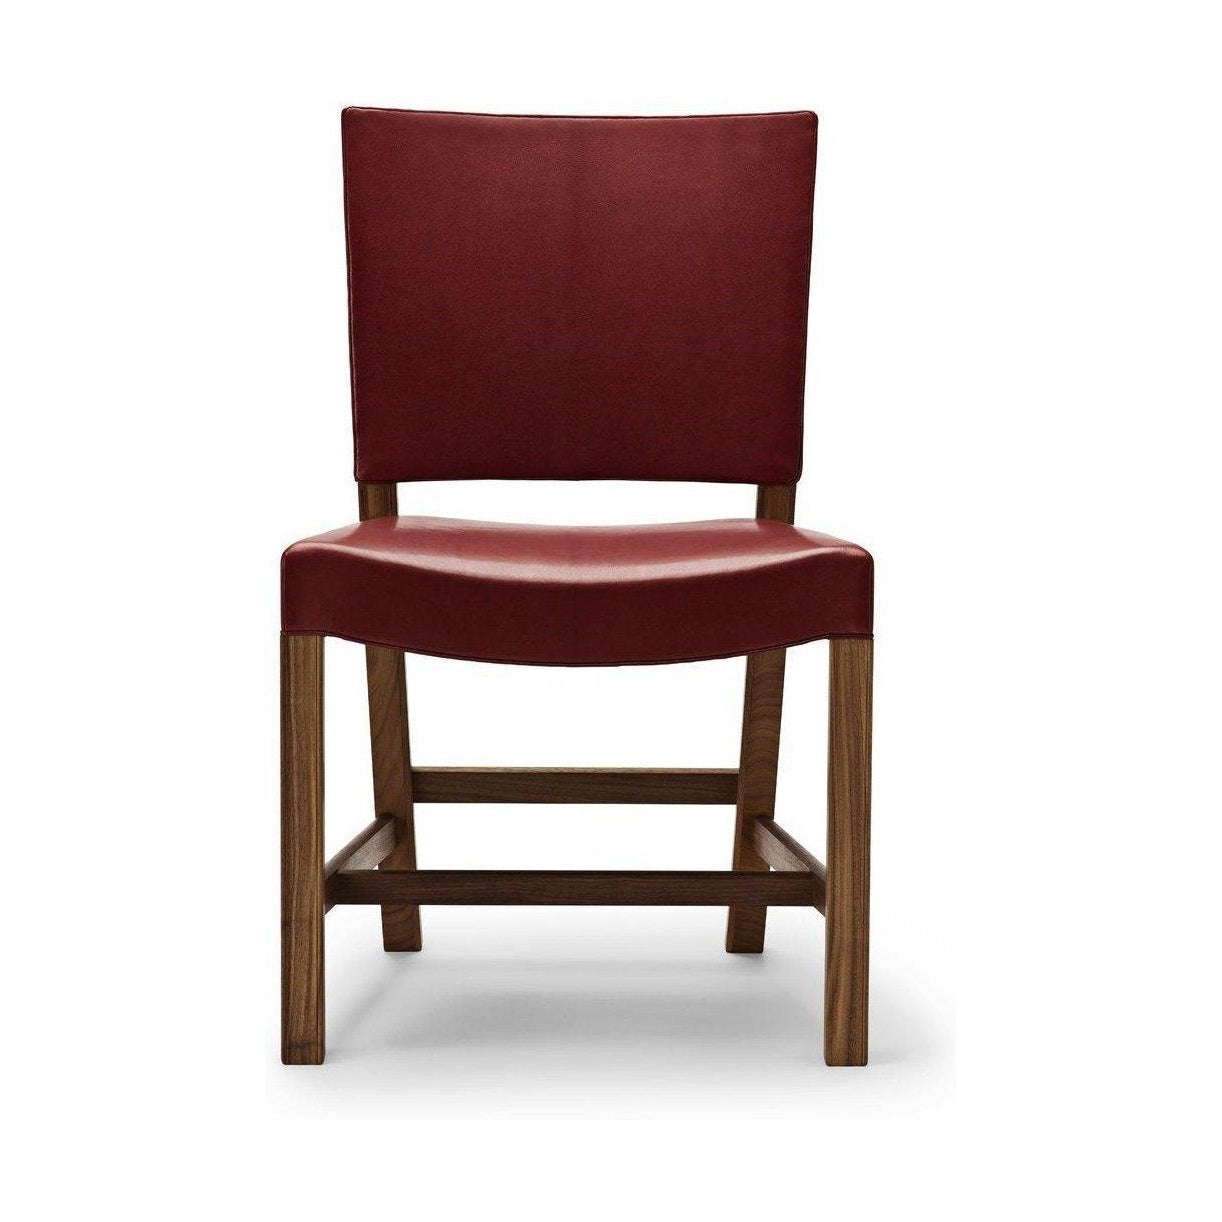 Carl Hansen Den röda stolen, 53 cm